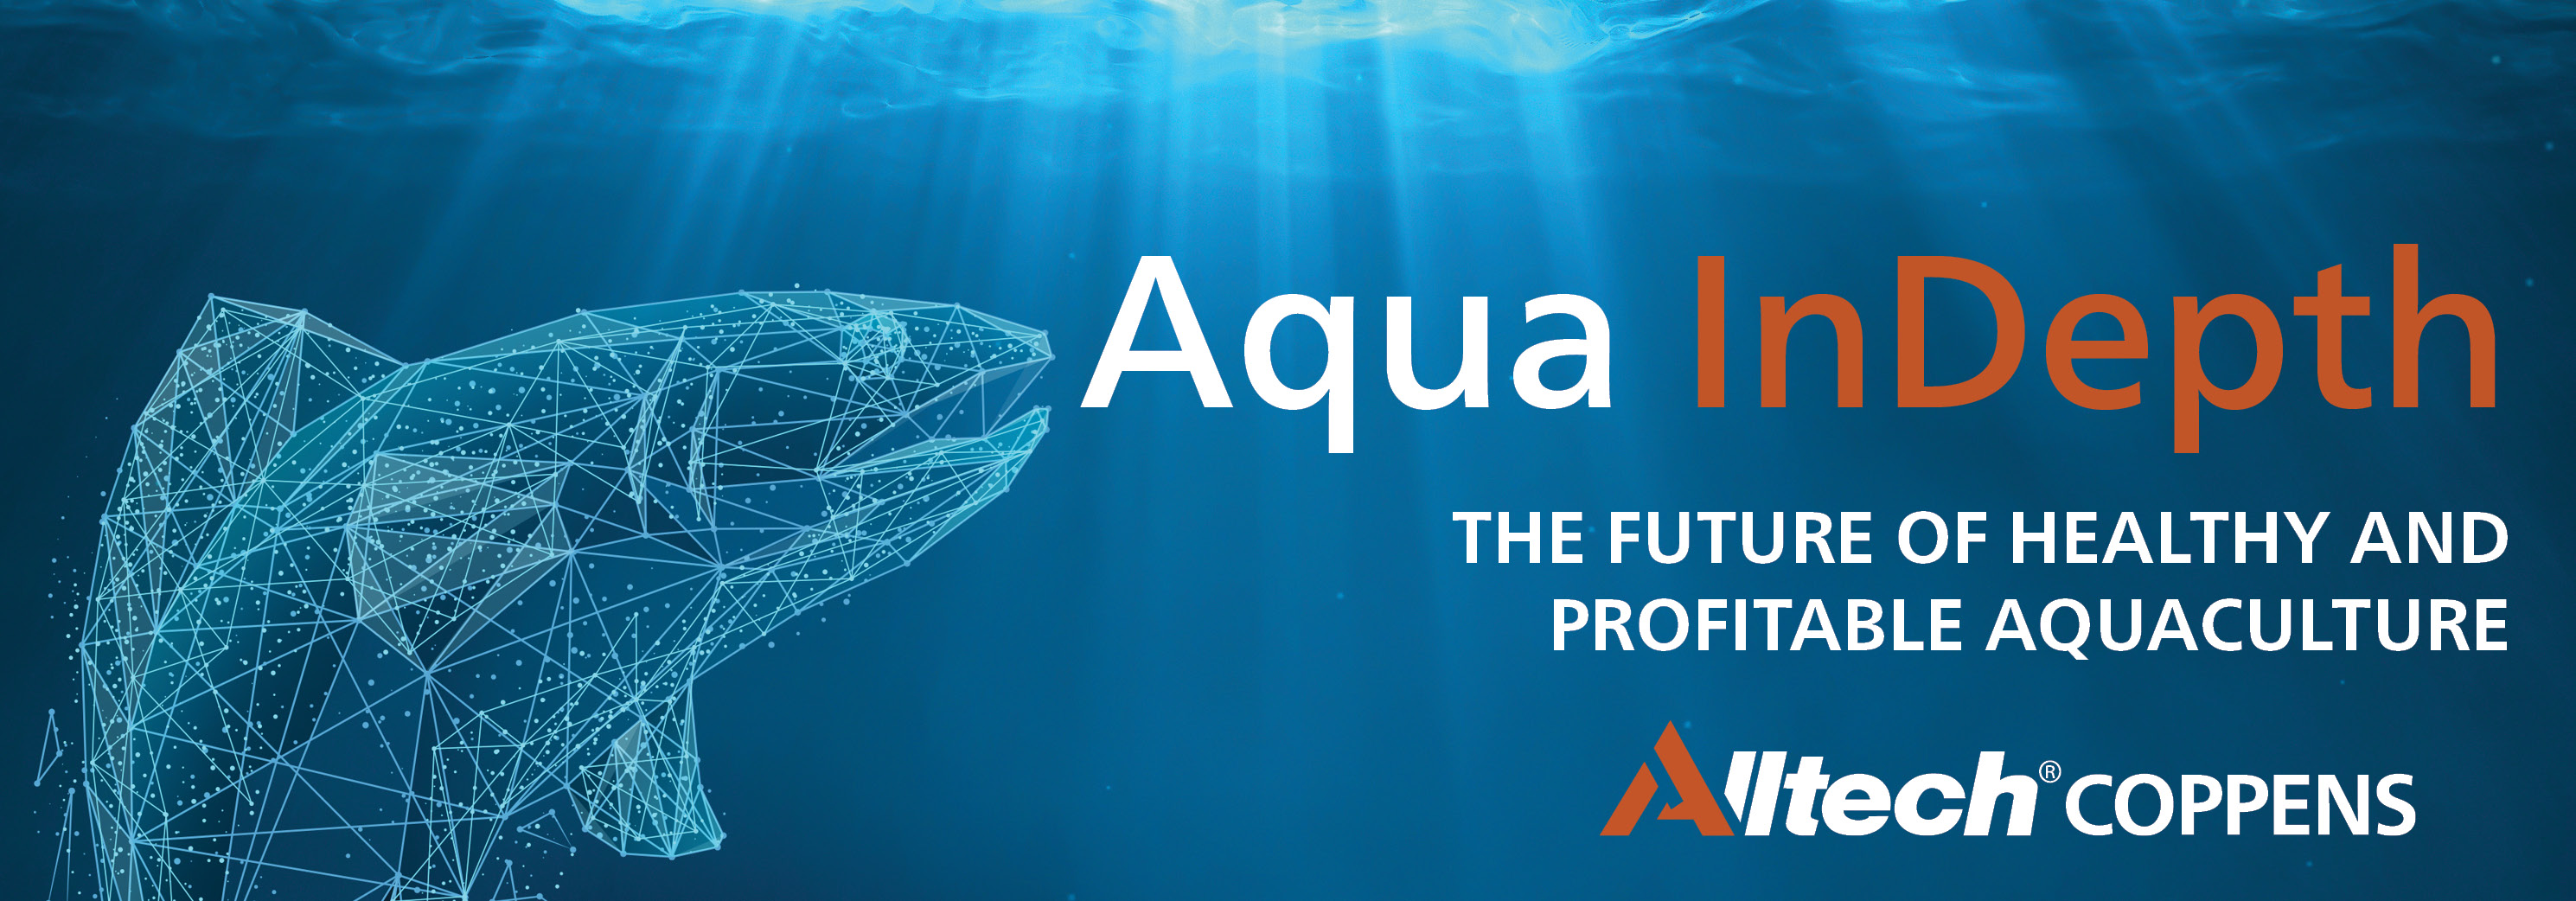 Aqua InDepth Conference